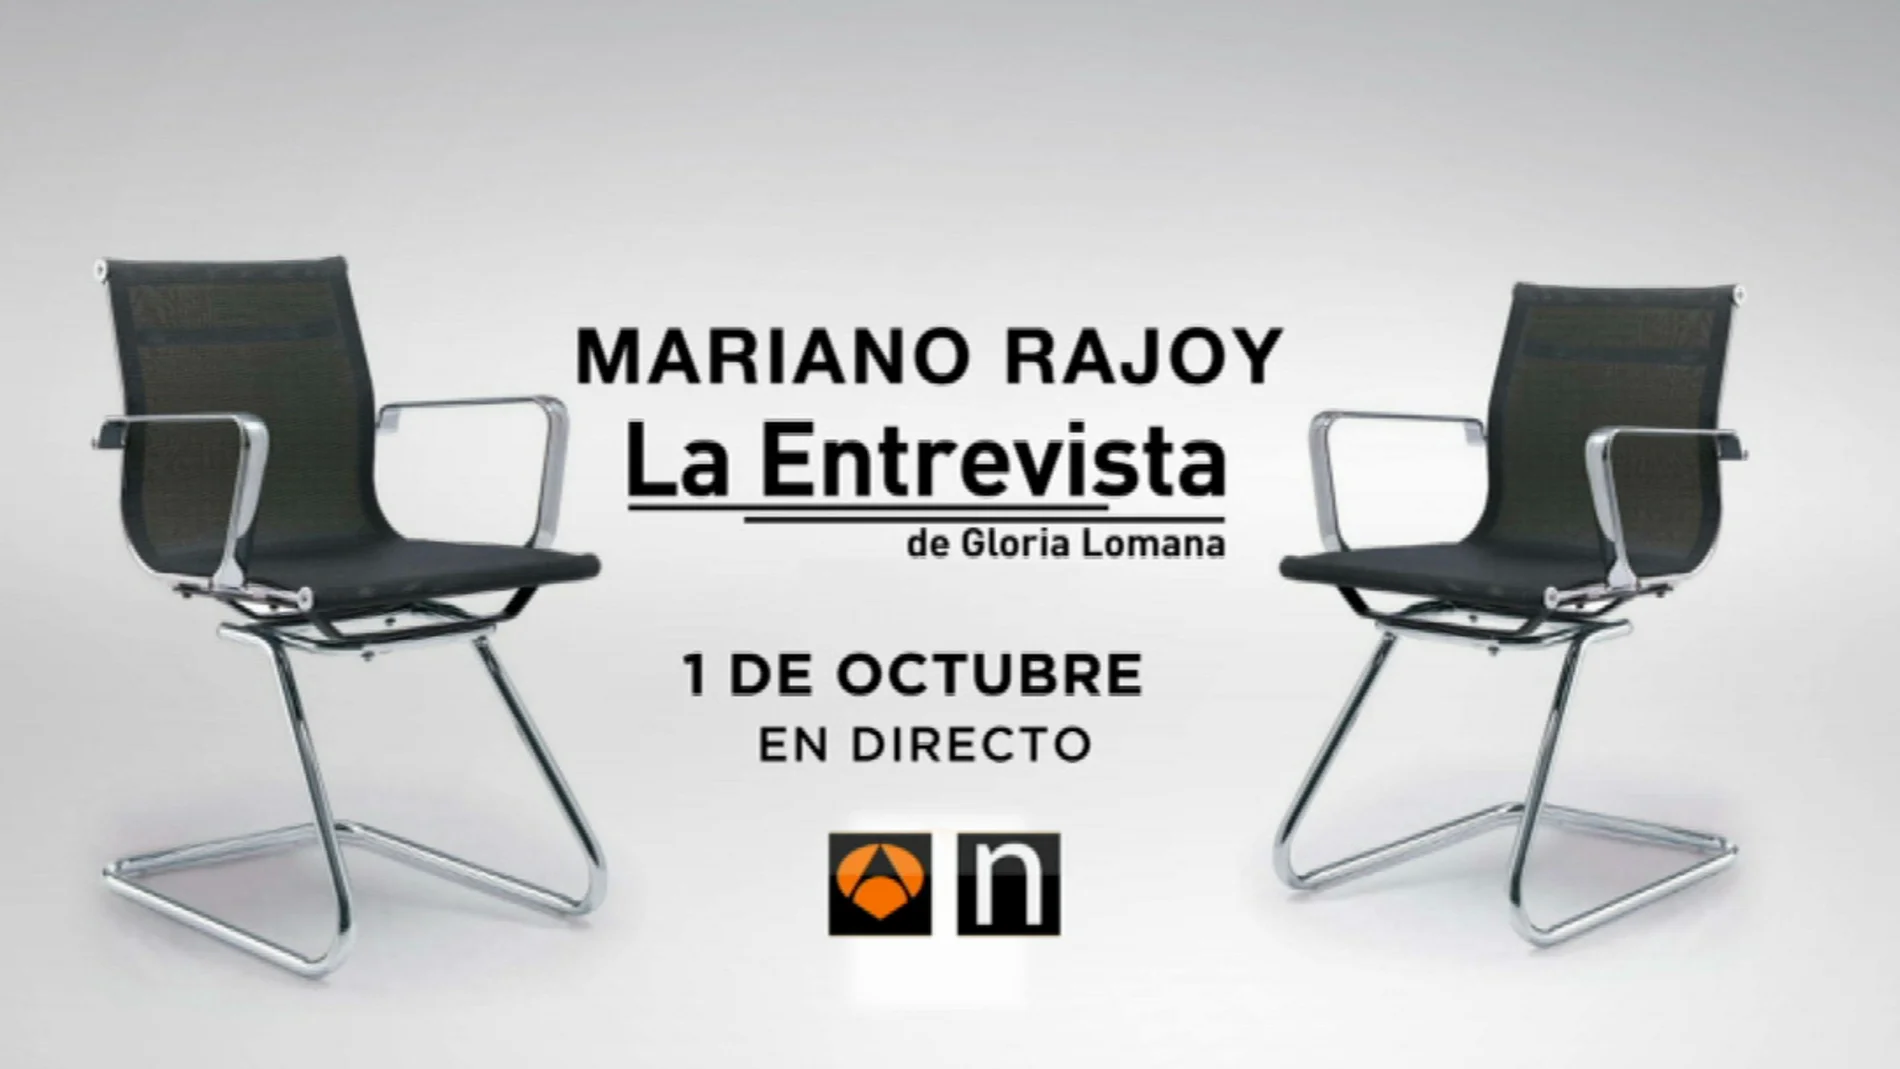 Entrevista de Gloria Lomana a Mariano Rajoy